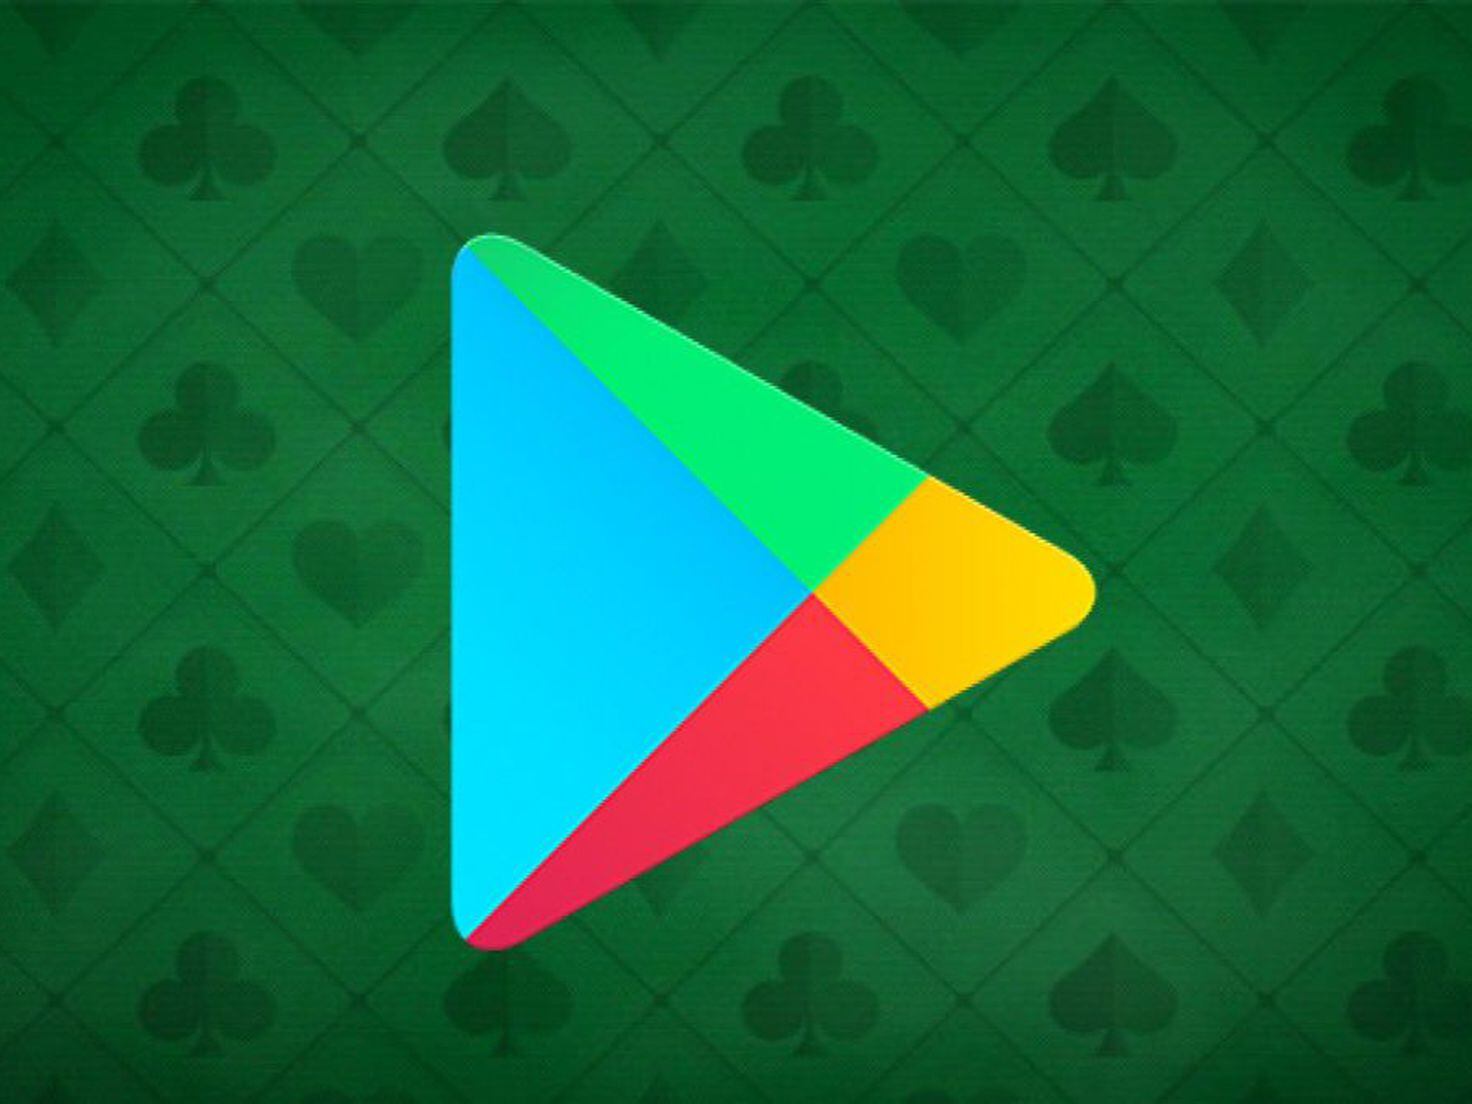 Descargar juegos de pago gratis en la tienda de Google Play